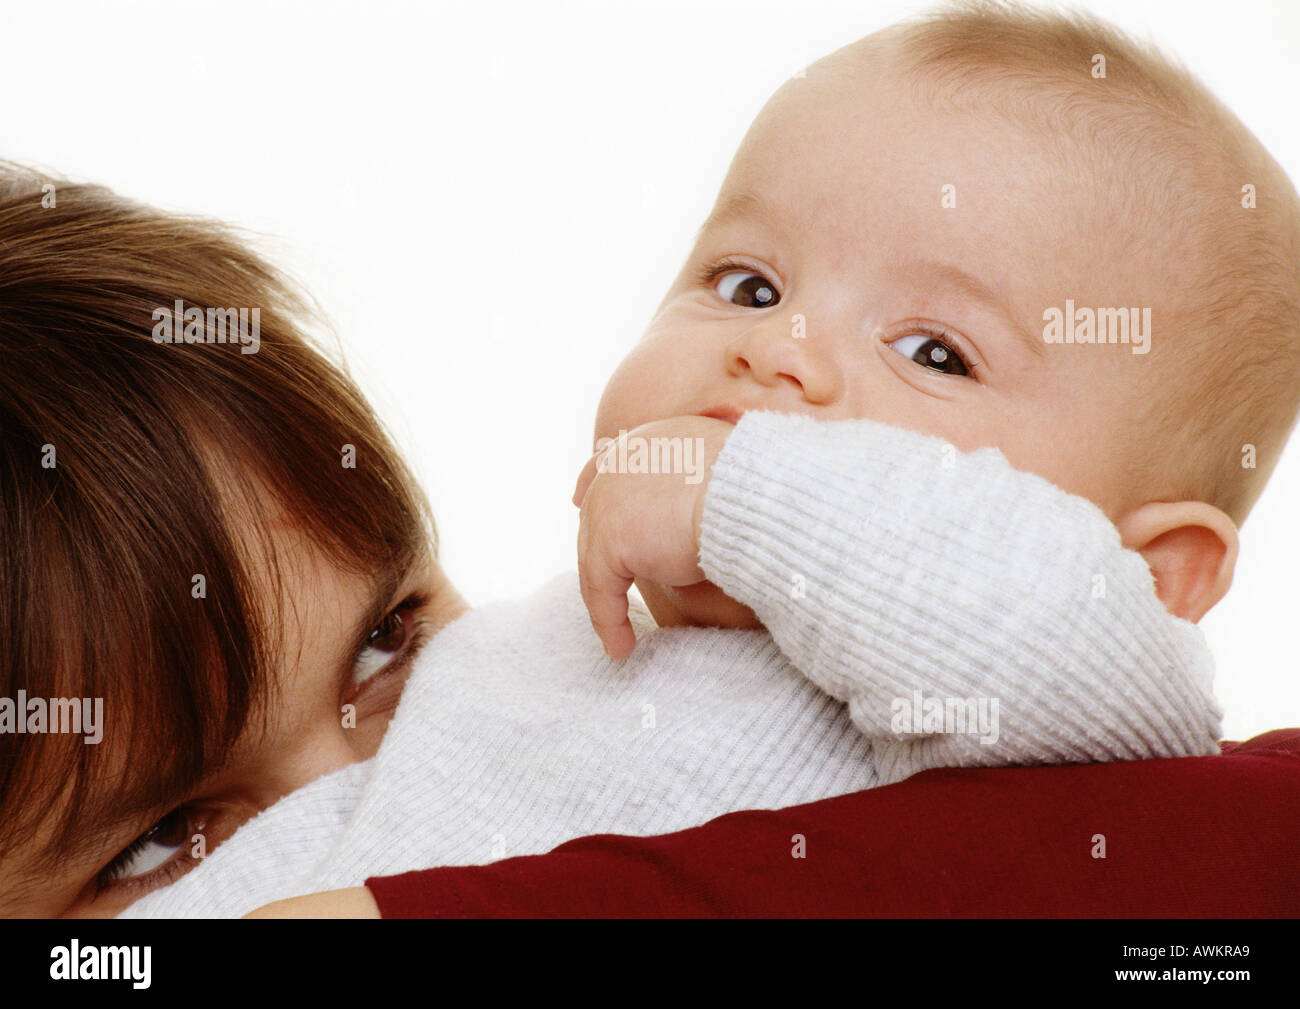 Il bambino con la mano in bocca guardando la fotocamera, la donna, la parte superiore della testa, guardando il baby, close-up Foto Stock